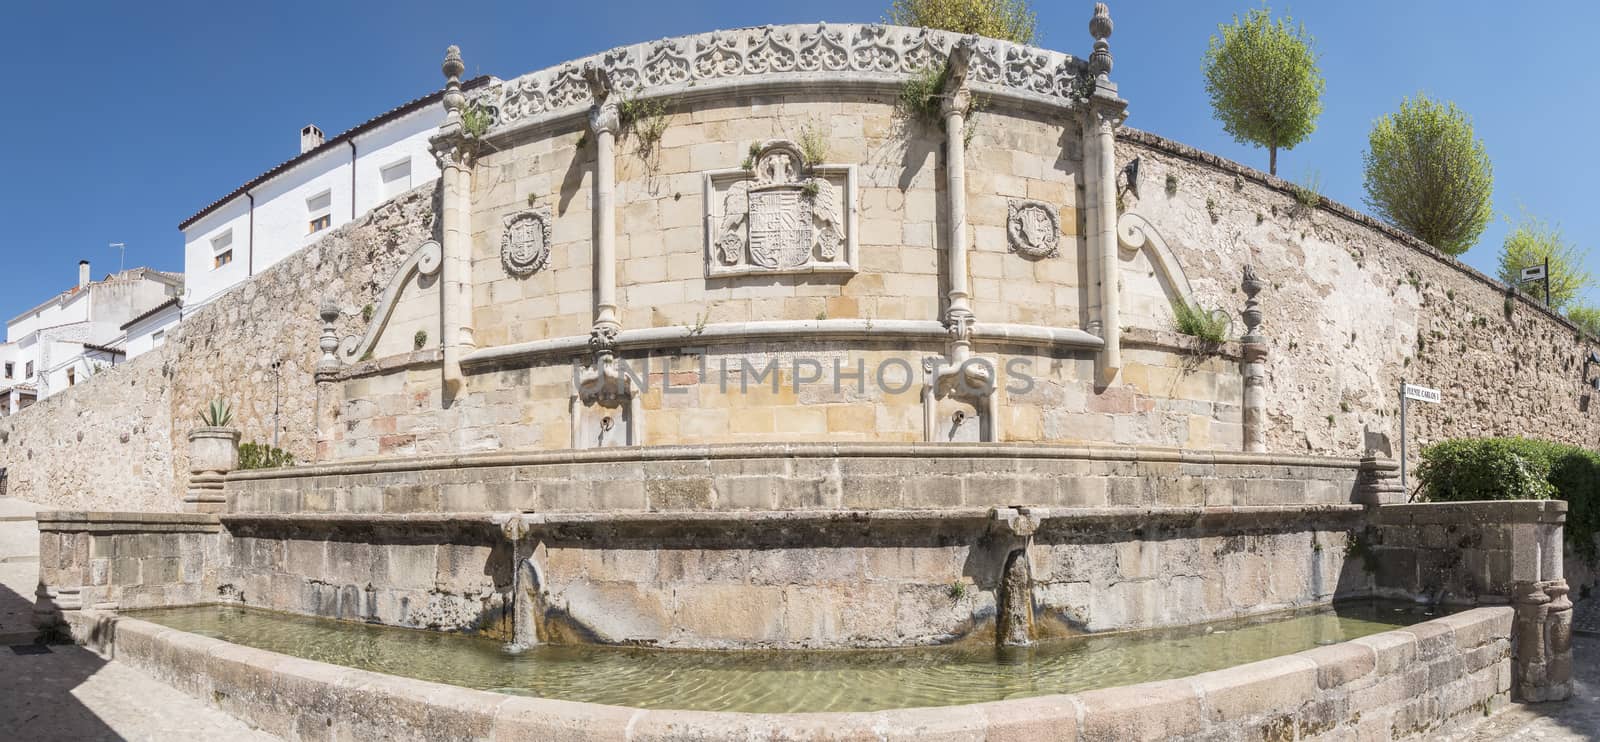 Imperial or Carlos V fountain, Sierra de segura, Jaen, Spain by max8xam